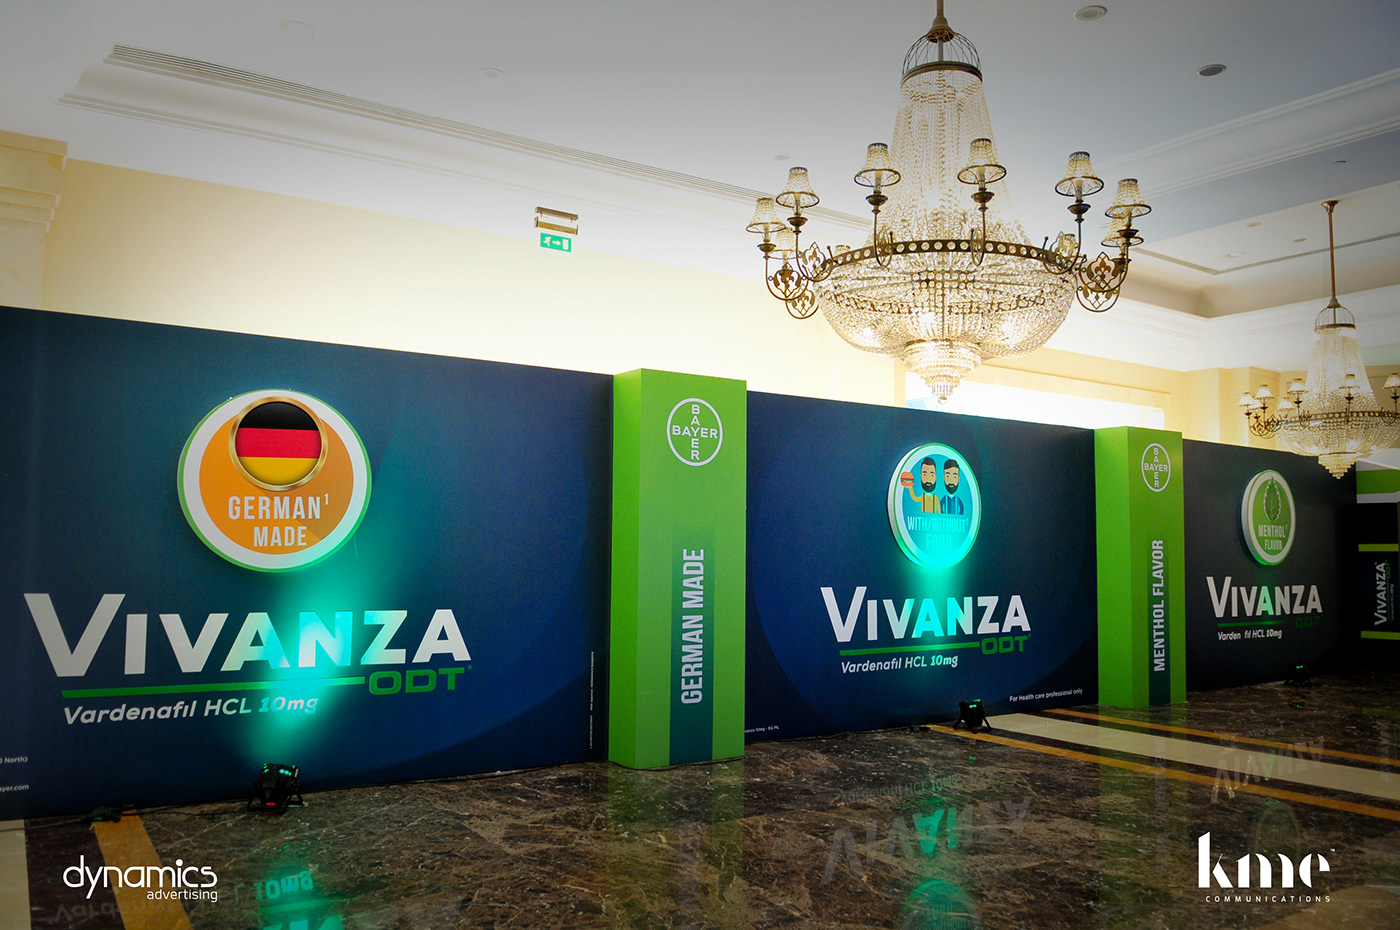 Vivanza Launch Event Vivanza Launch Event backdrop gate Event diraction jw JW Marriott